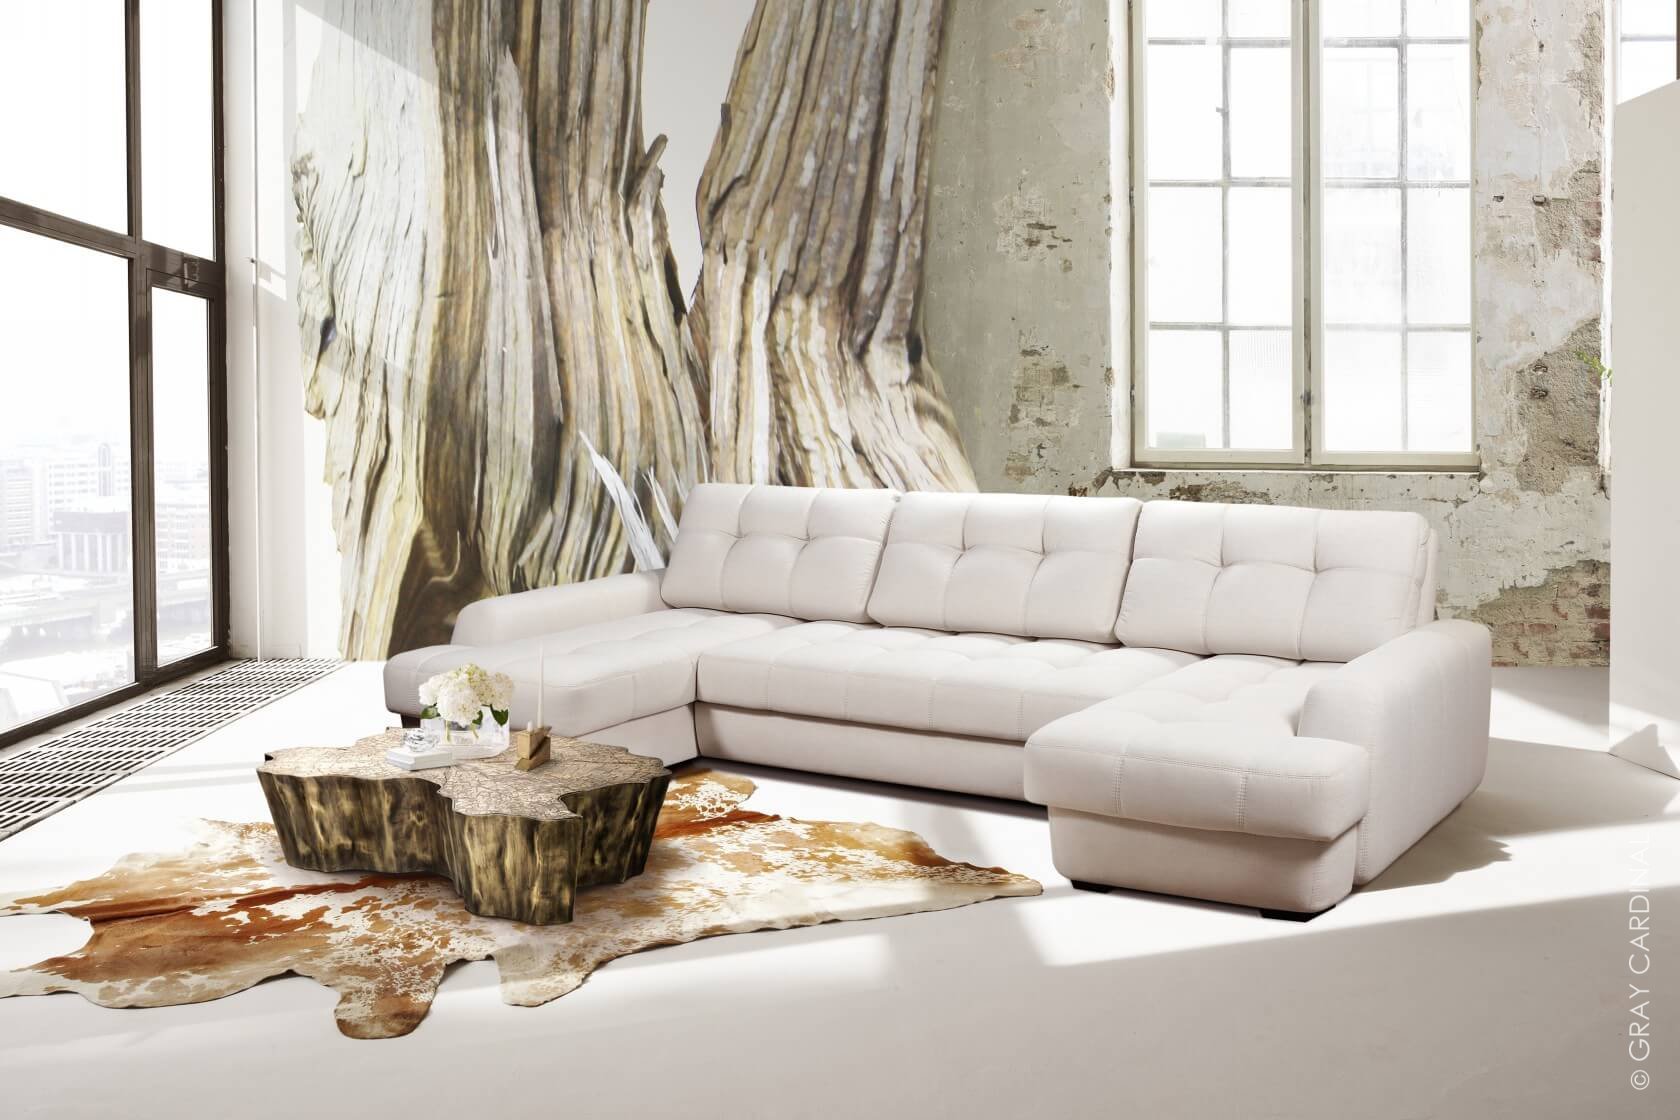 Заказать модульный диван «Relax» от производителя - Невообразимый выбормоделей, функциональности, цветов и материалов на ваш вкус!